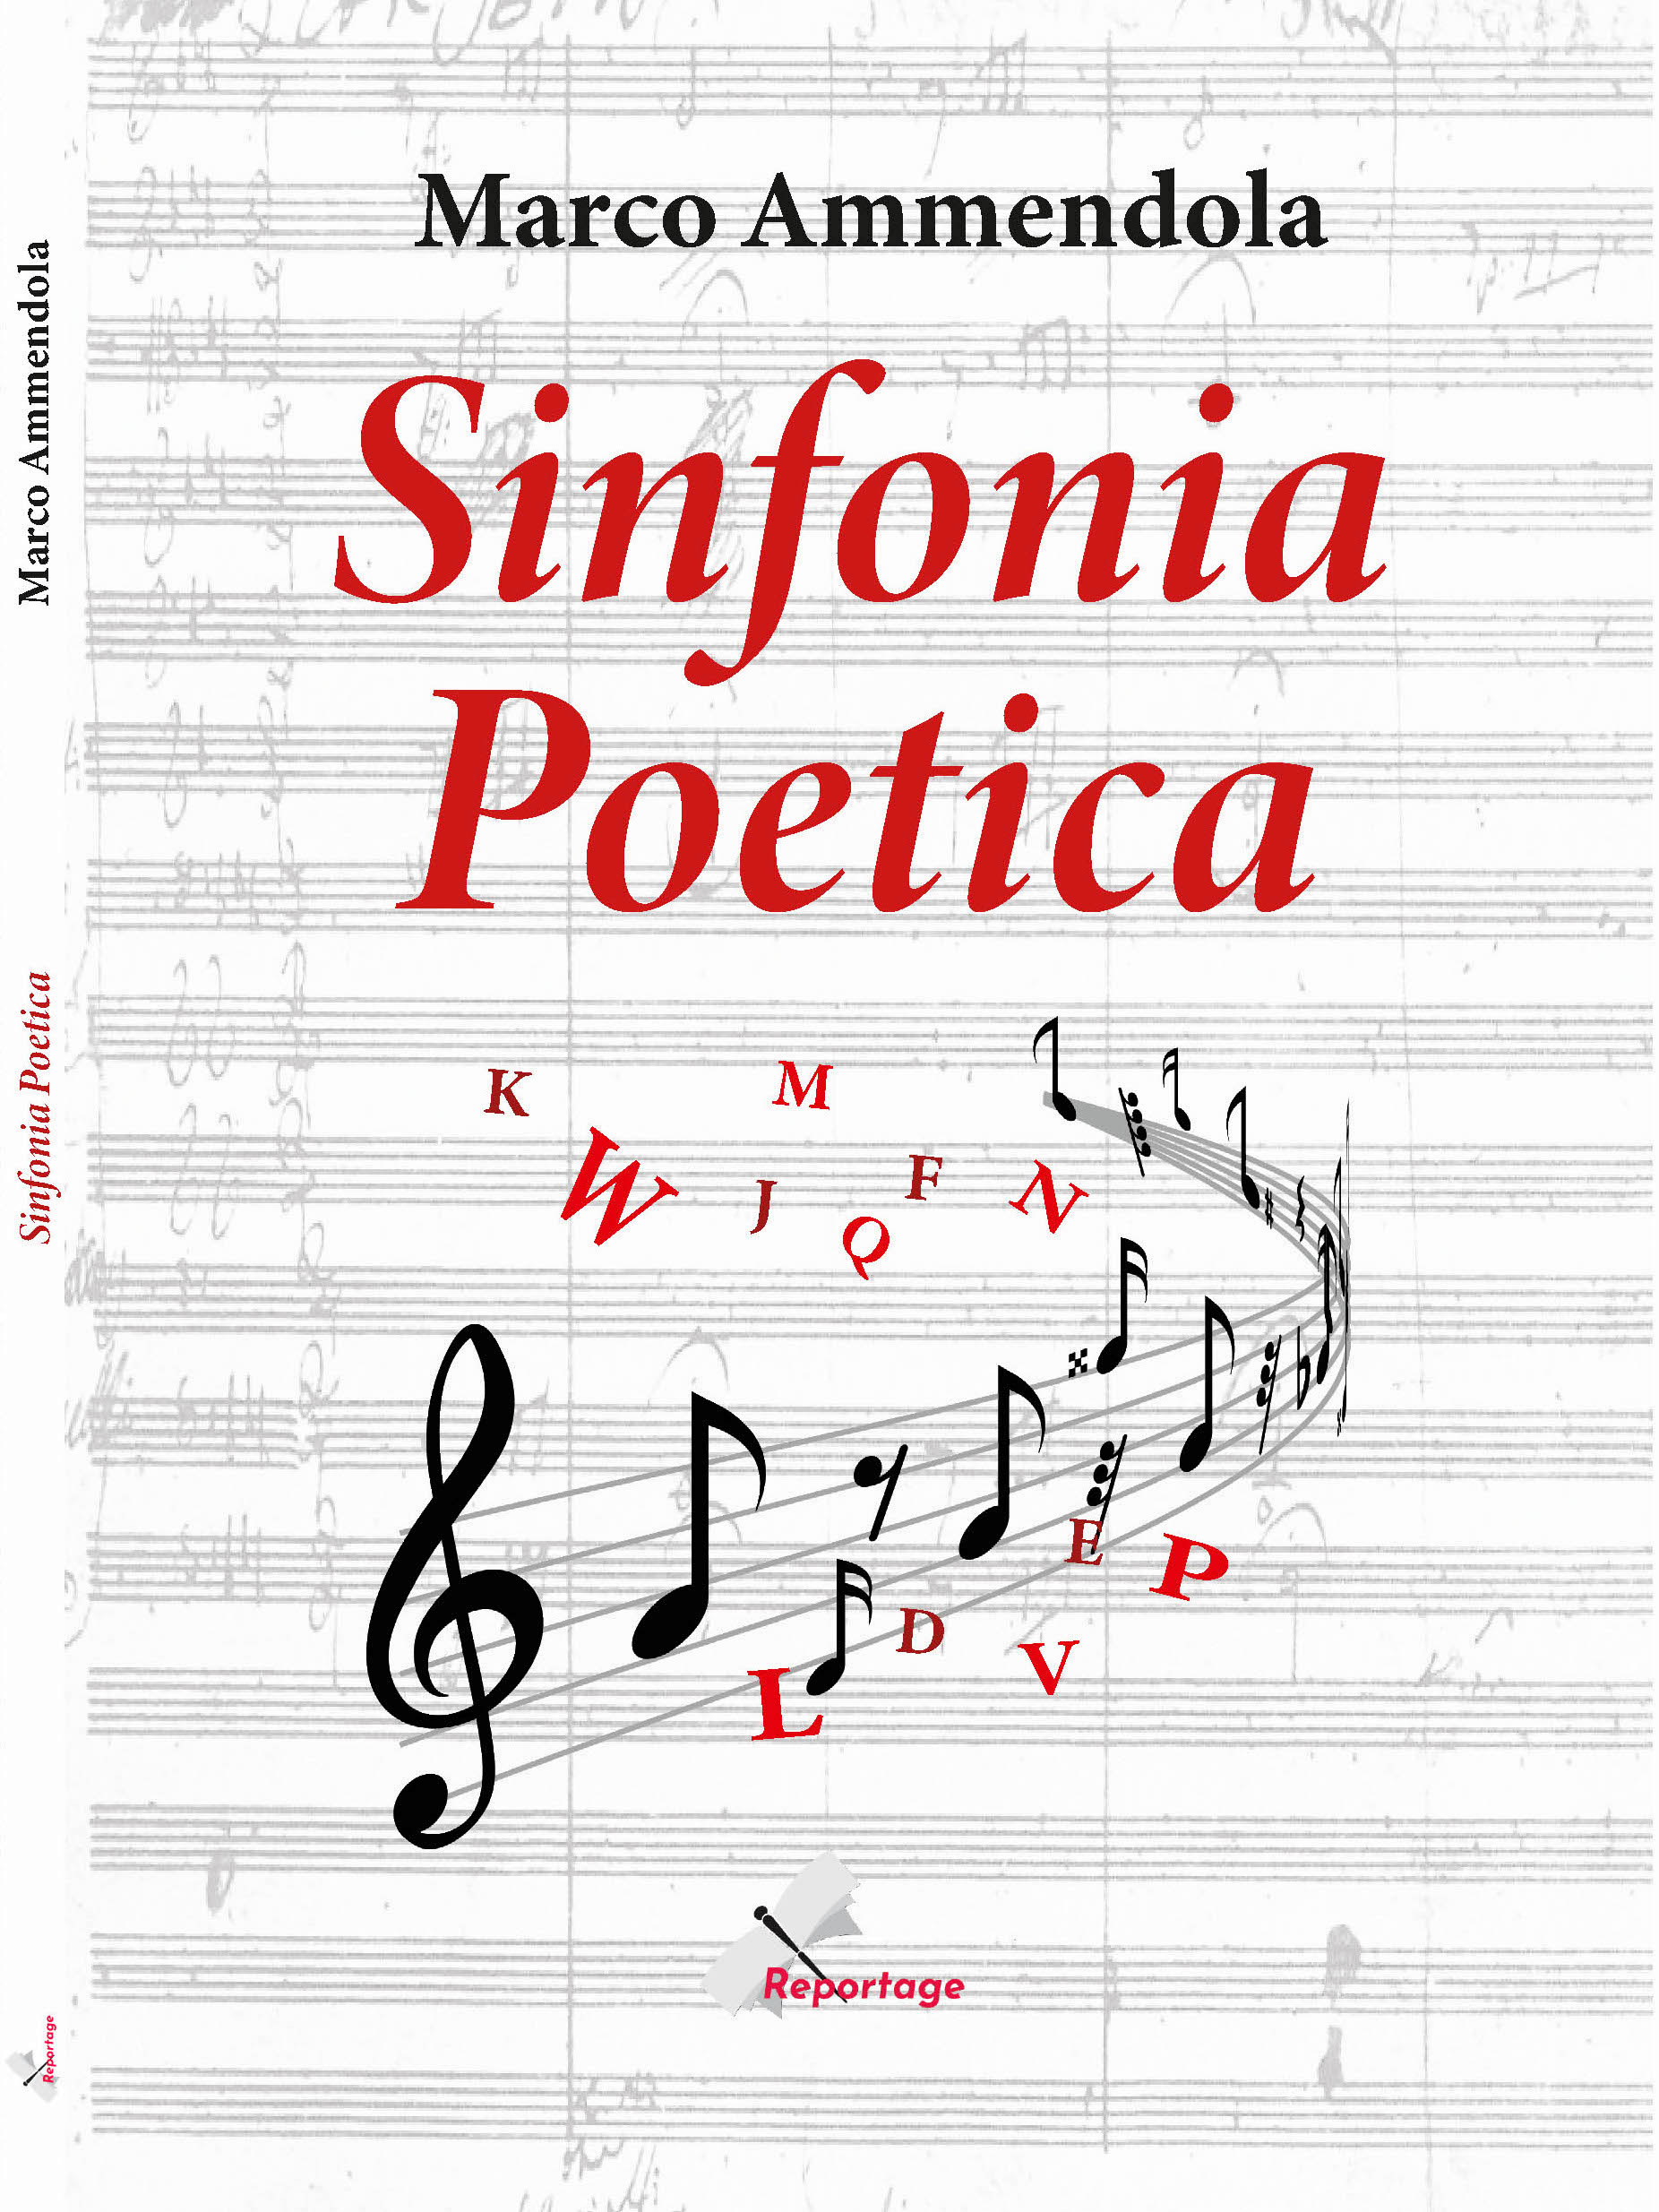 cover-sinfonia-poetica-def-n1